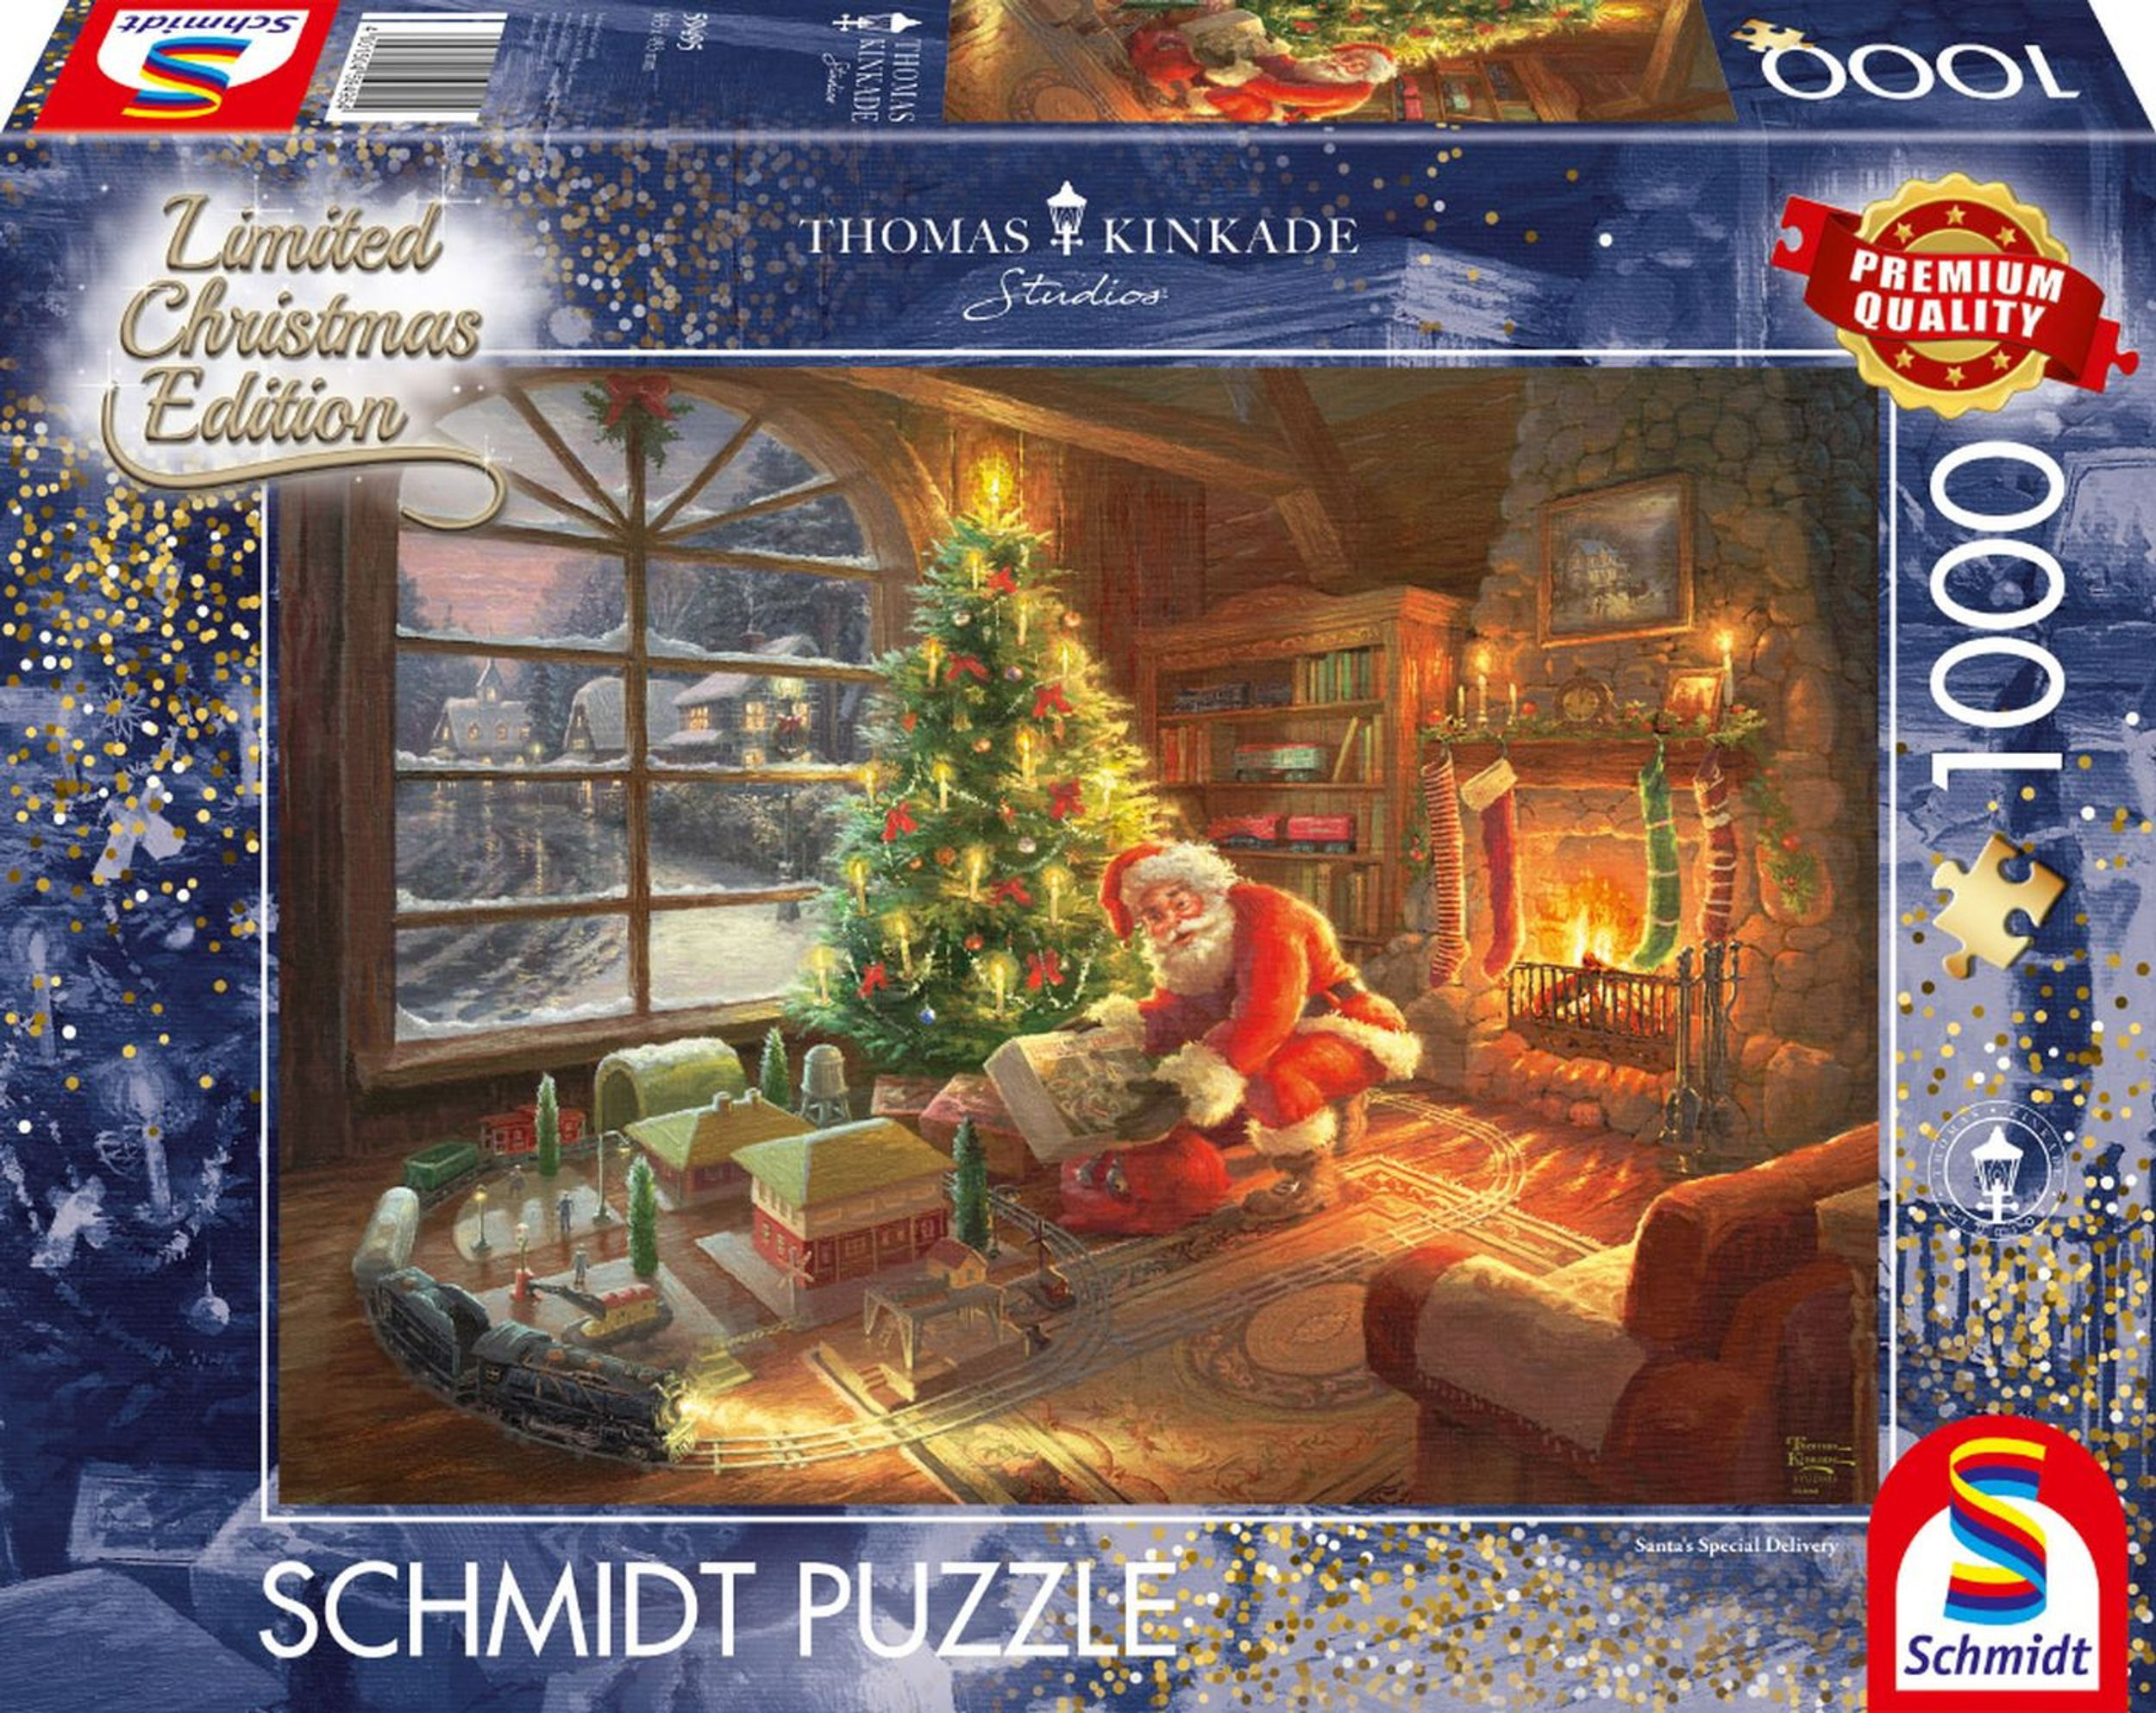 SCHMIDT SPIELE Der Weihnachtsmann da Puzzle ist